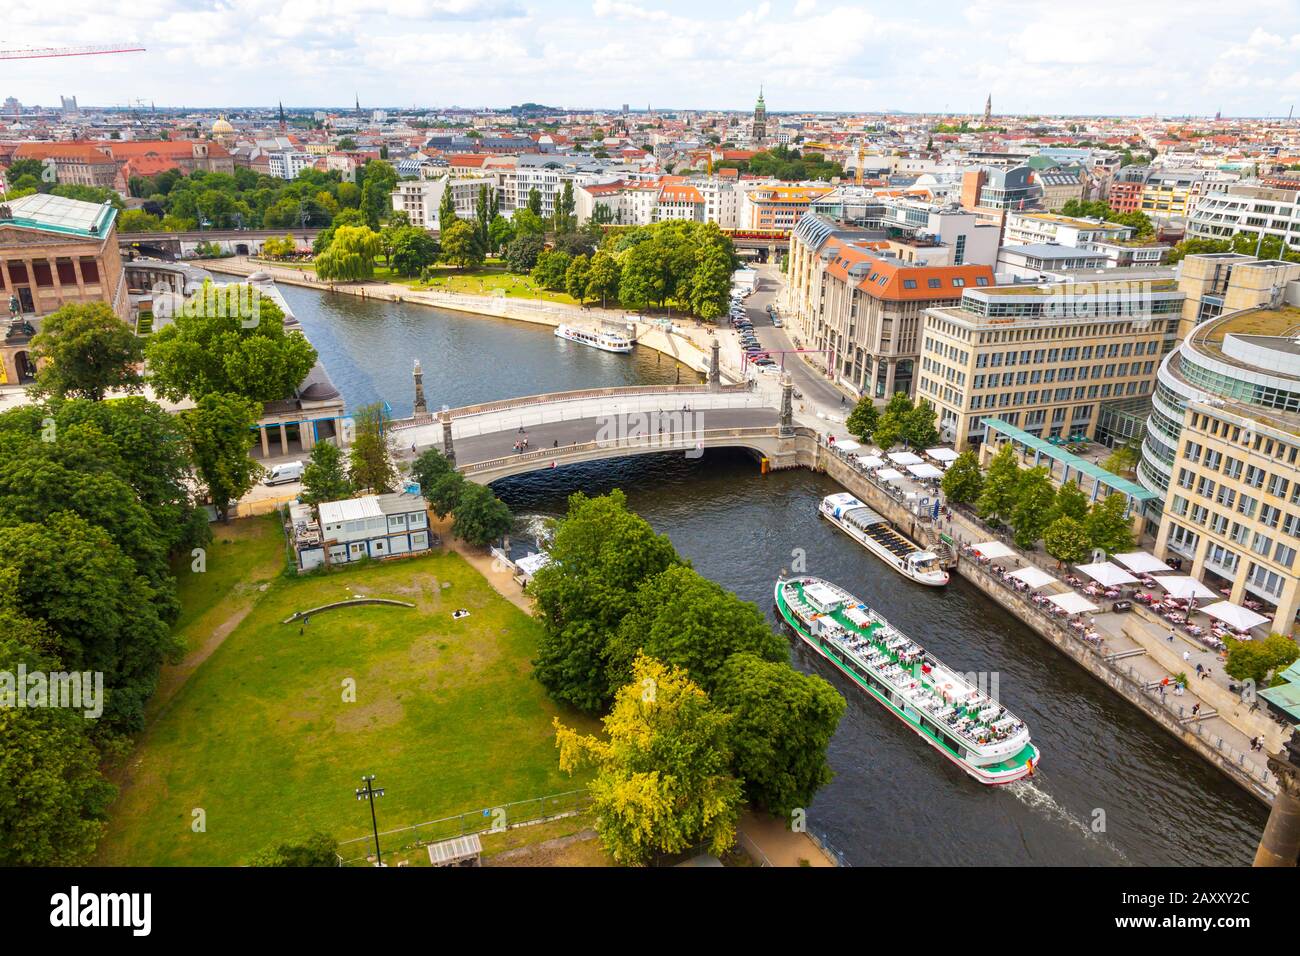 Берлинская река 4. Берлин набережная реки Шпрее. Река в Берлине. Столица Германии расположена на реке Днепр Шпрее Эльба. Река в Берлине селфи.